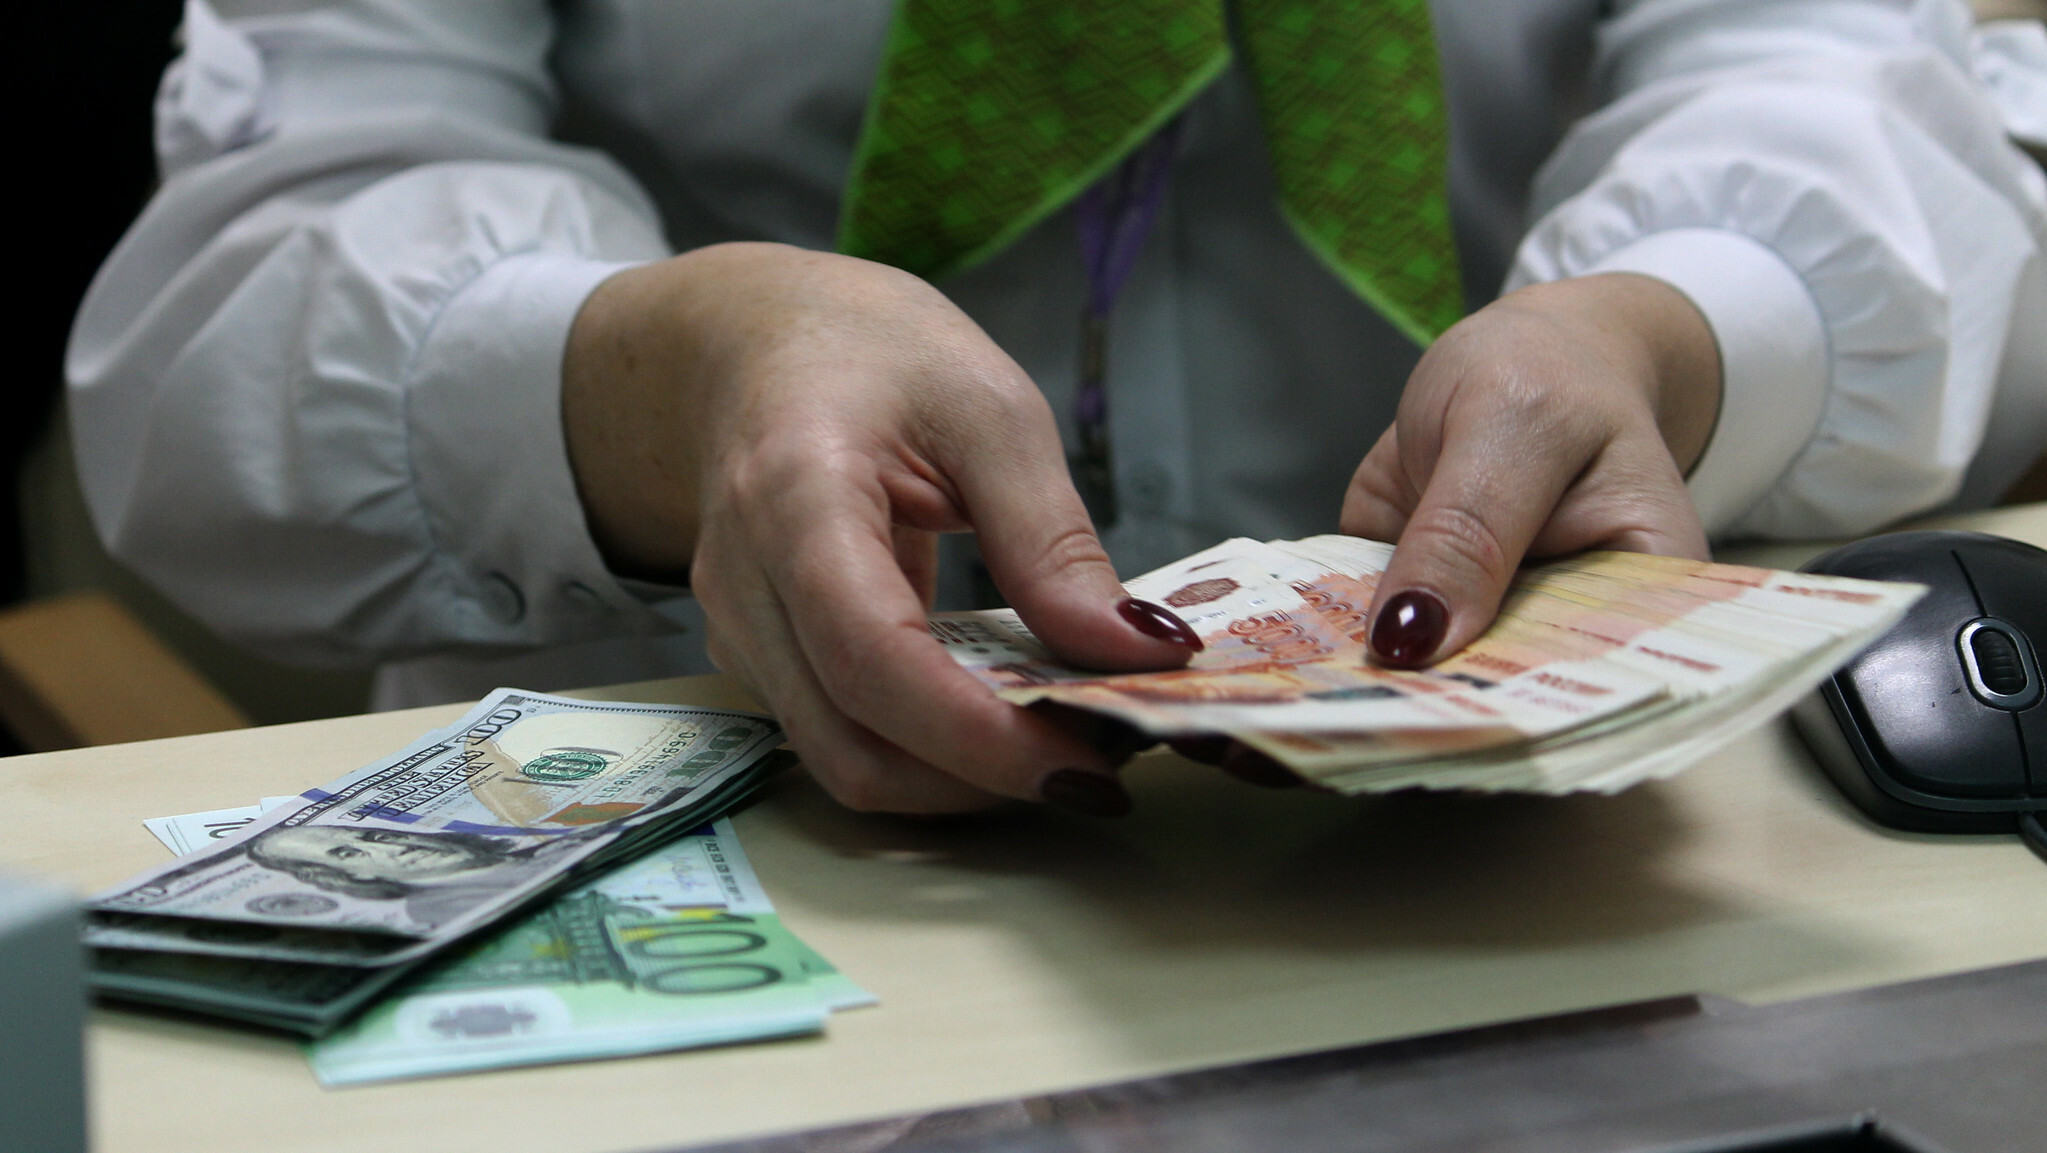 Биробиджан возьмет в кредит 50 миллионов рублей, чтобы закрыть бреши в бюджете